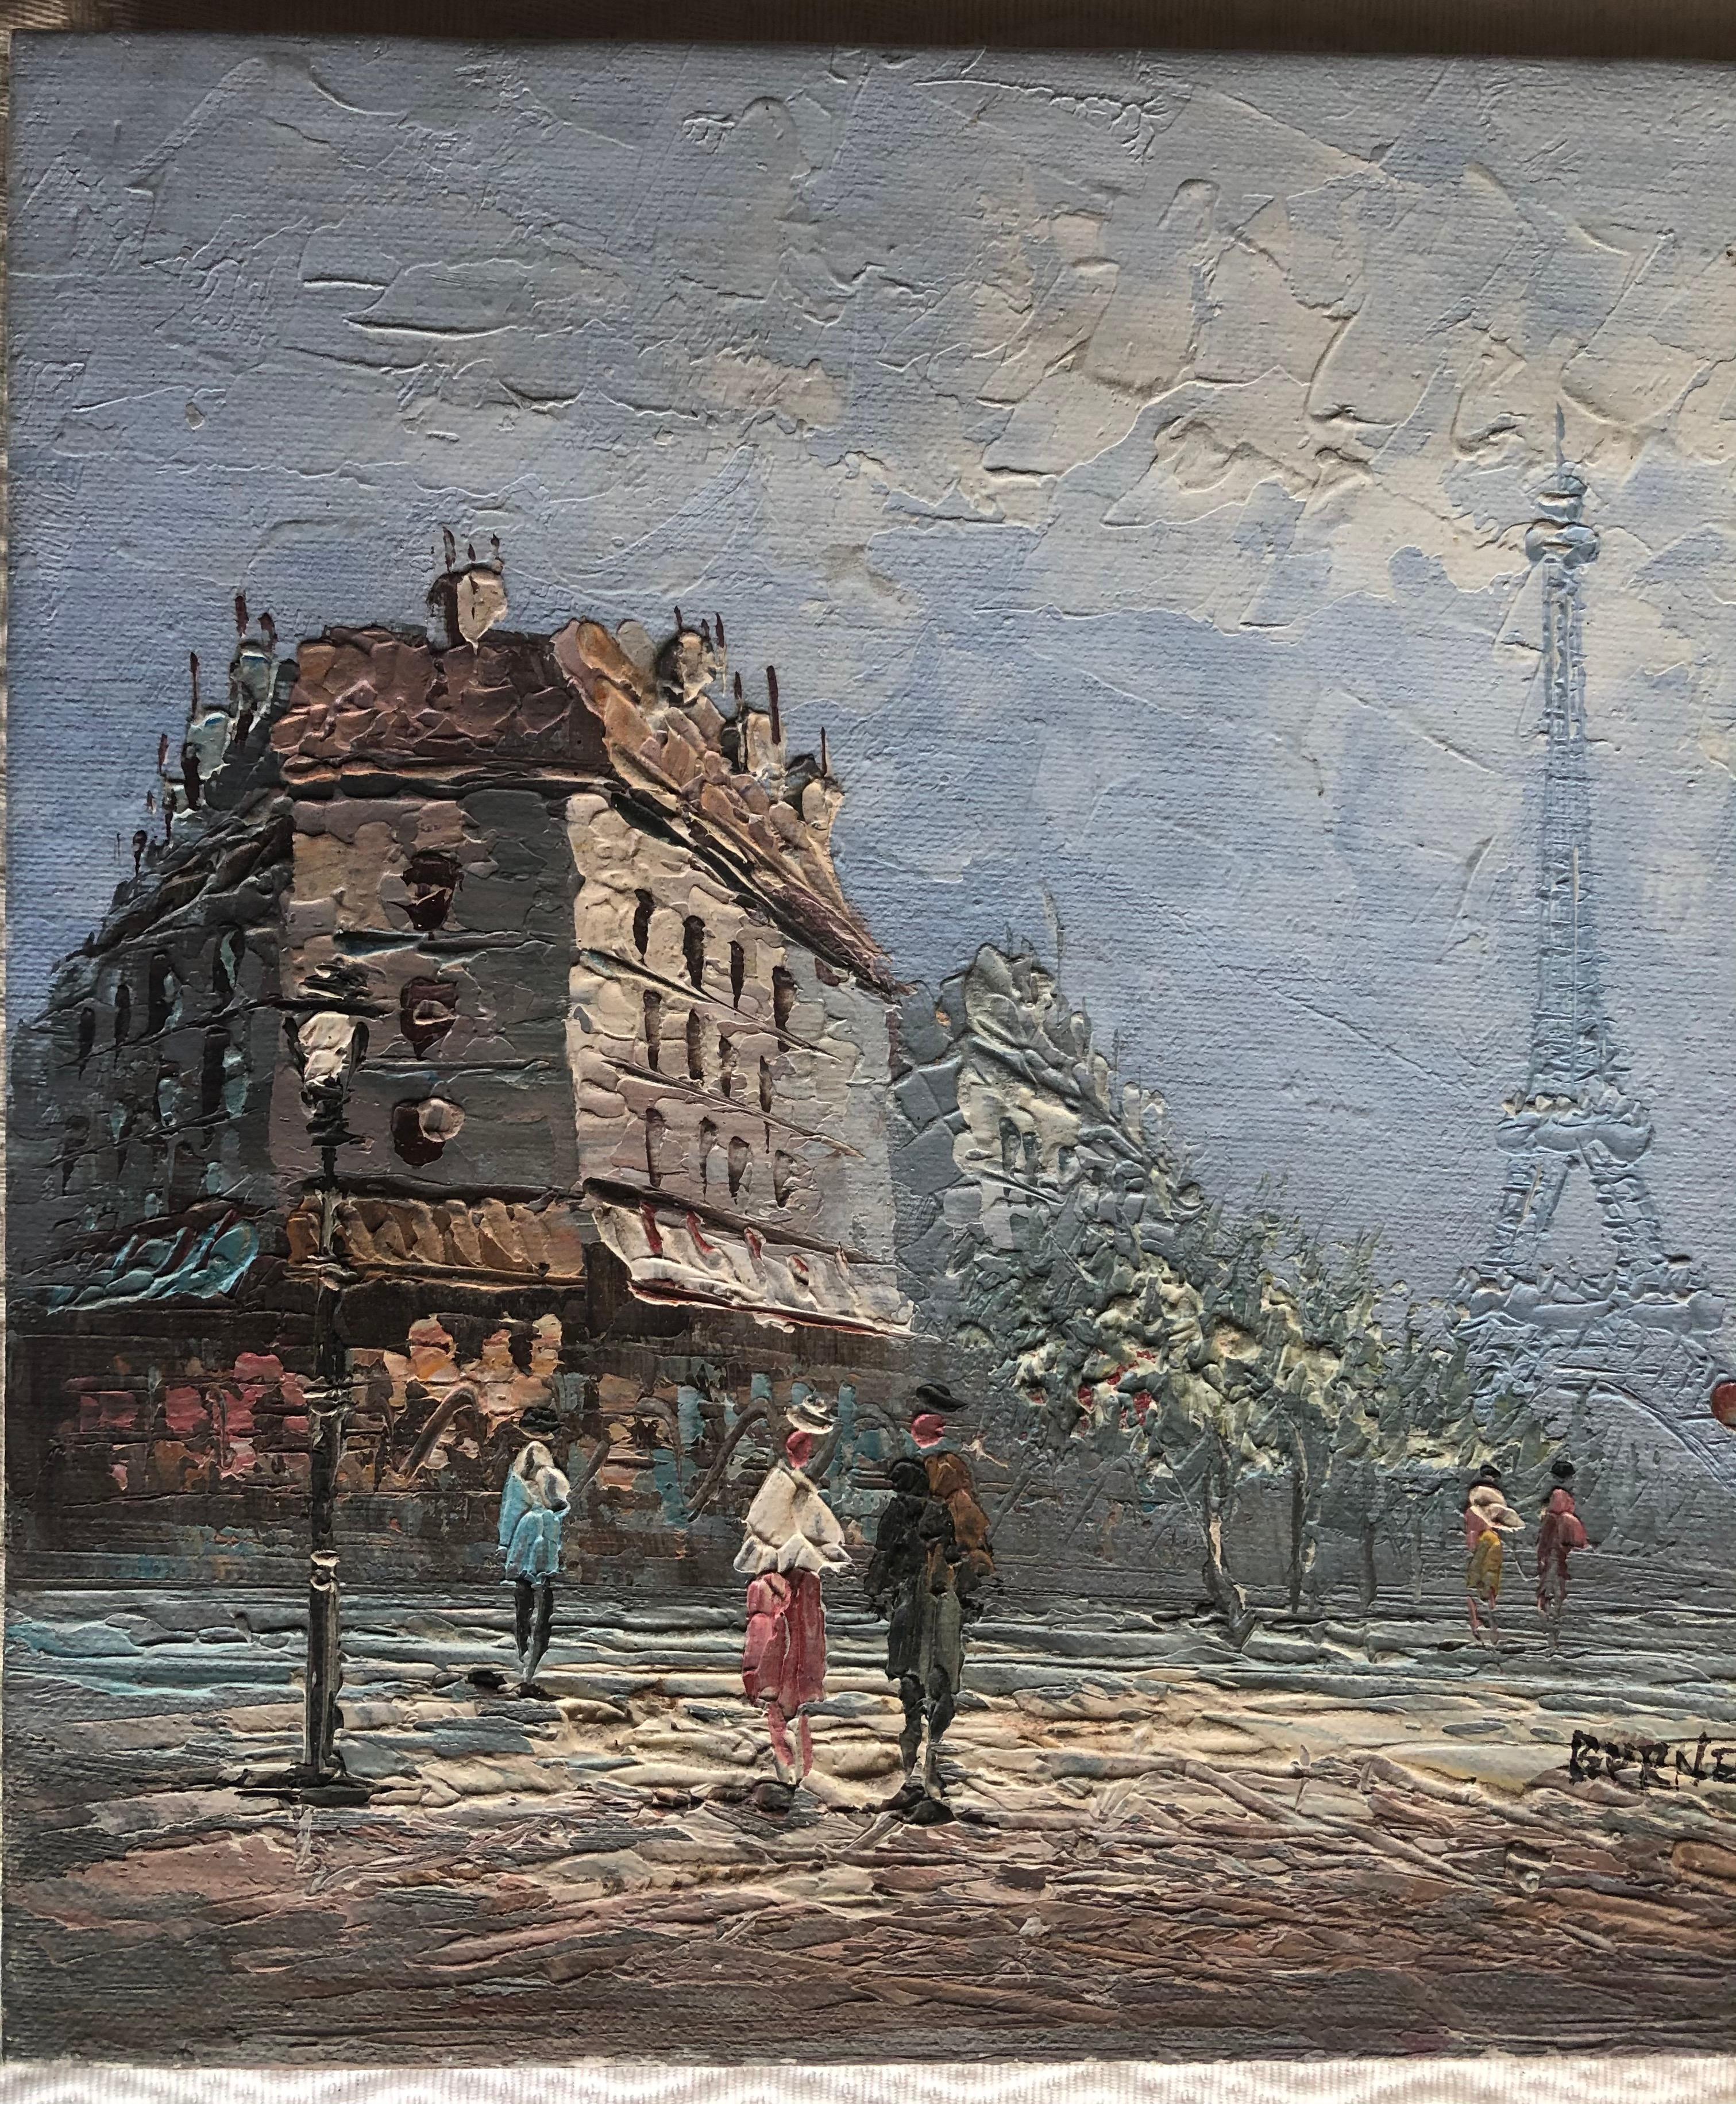 Une belle vue d'un paysage ou d'une scène de rue urbaine à Paris, en France, avec la Tour Eiffel en arrière-plan. Cette peinture dépeint parfaitement la vie à Paris avec ses restaurants, ses rues animées, ses cafés, ses hôtels, ses monuments et sa